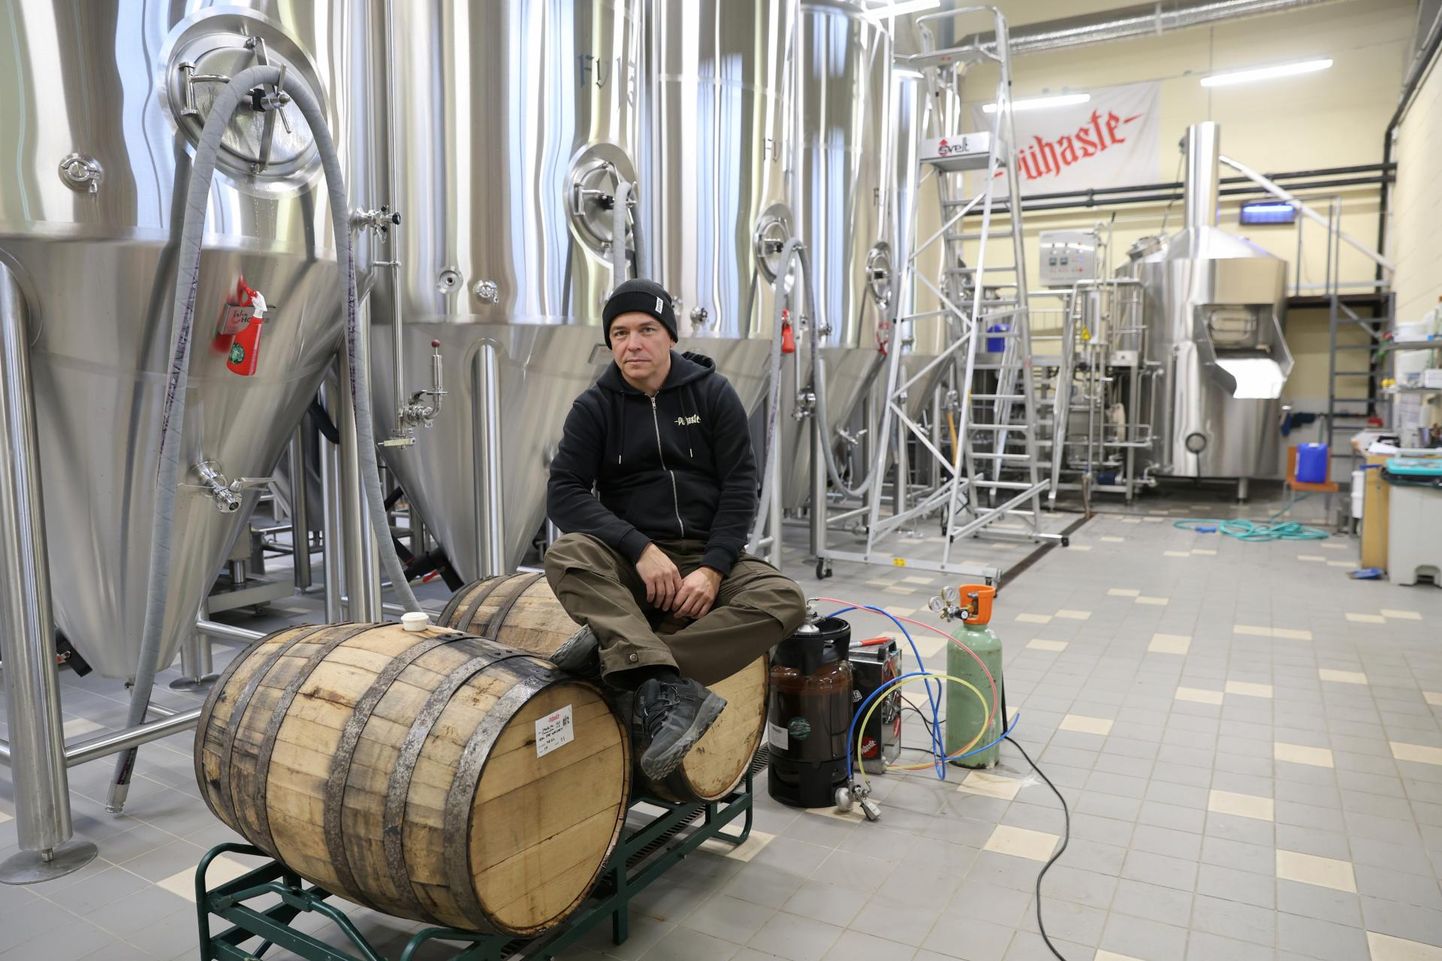 Pühaste pruulikoja tegevjuht Üllar Kaljurand ei karda, et käsitööõllede tootjaid õlle joomise langustrend palju kõigutab.